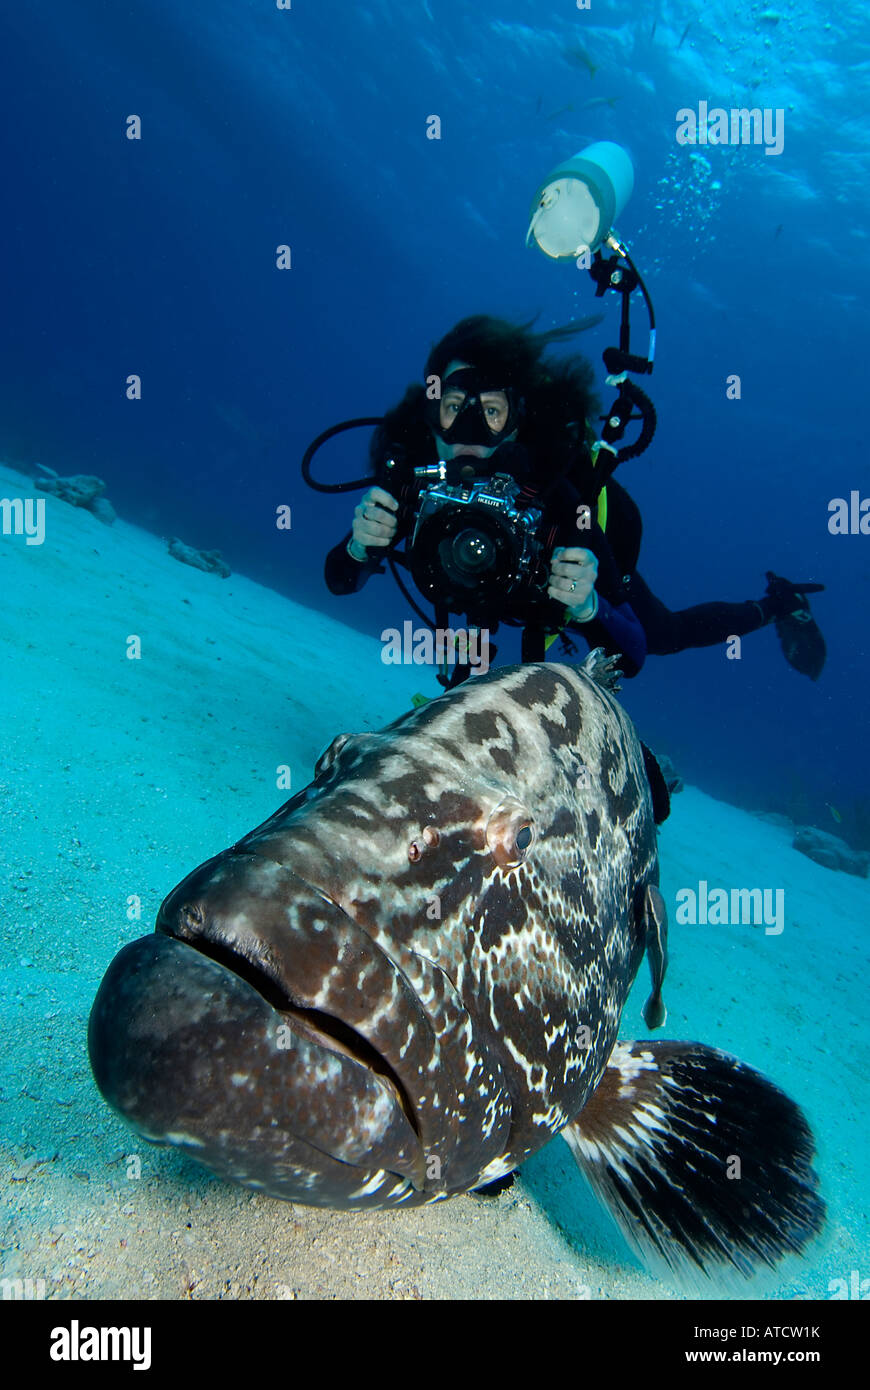 Le mérou et diver, photo, photographe, sur l'océan, sur la mer, plongée, plongée sous-marine, l'eau, bleu Banque D'Images